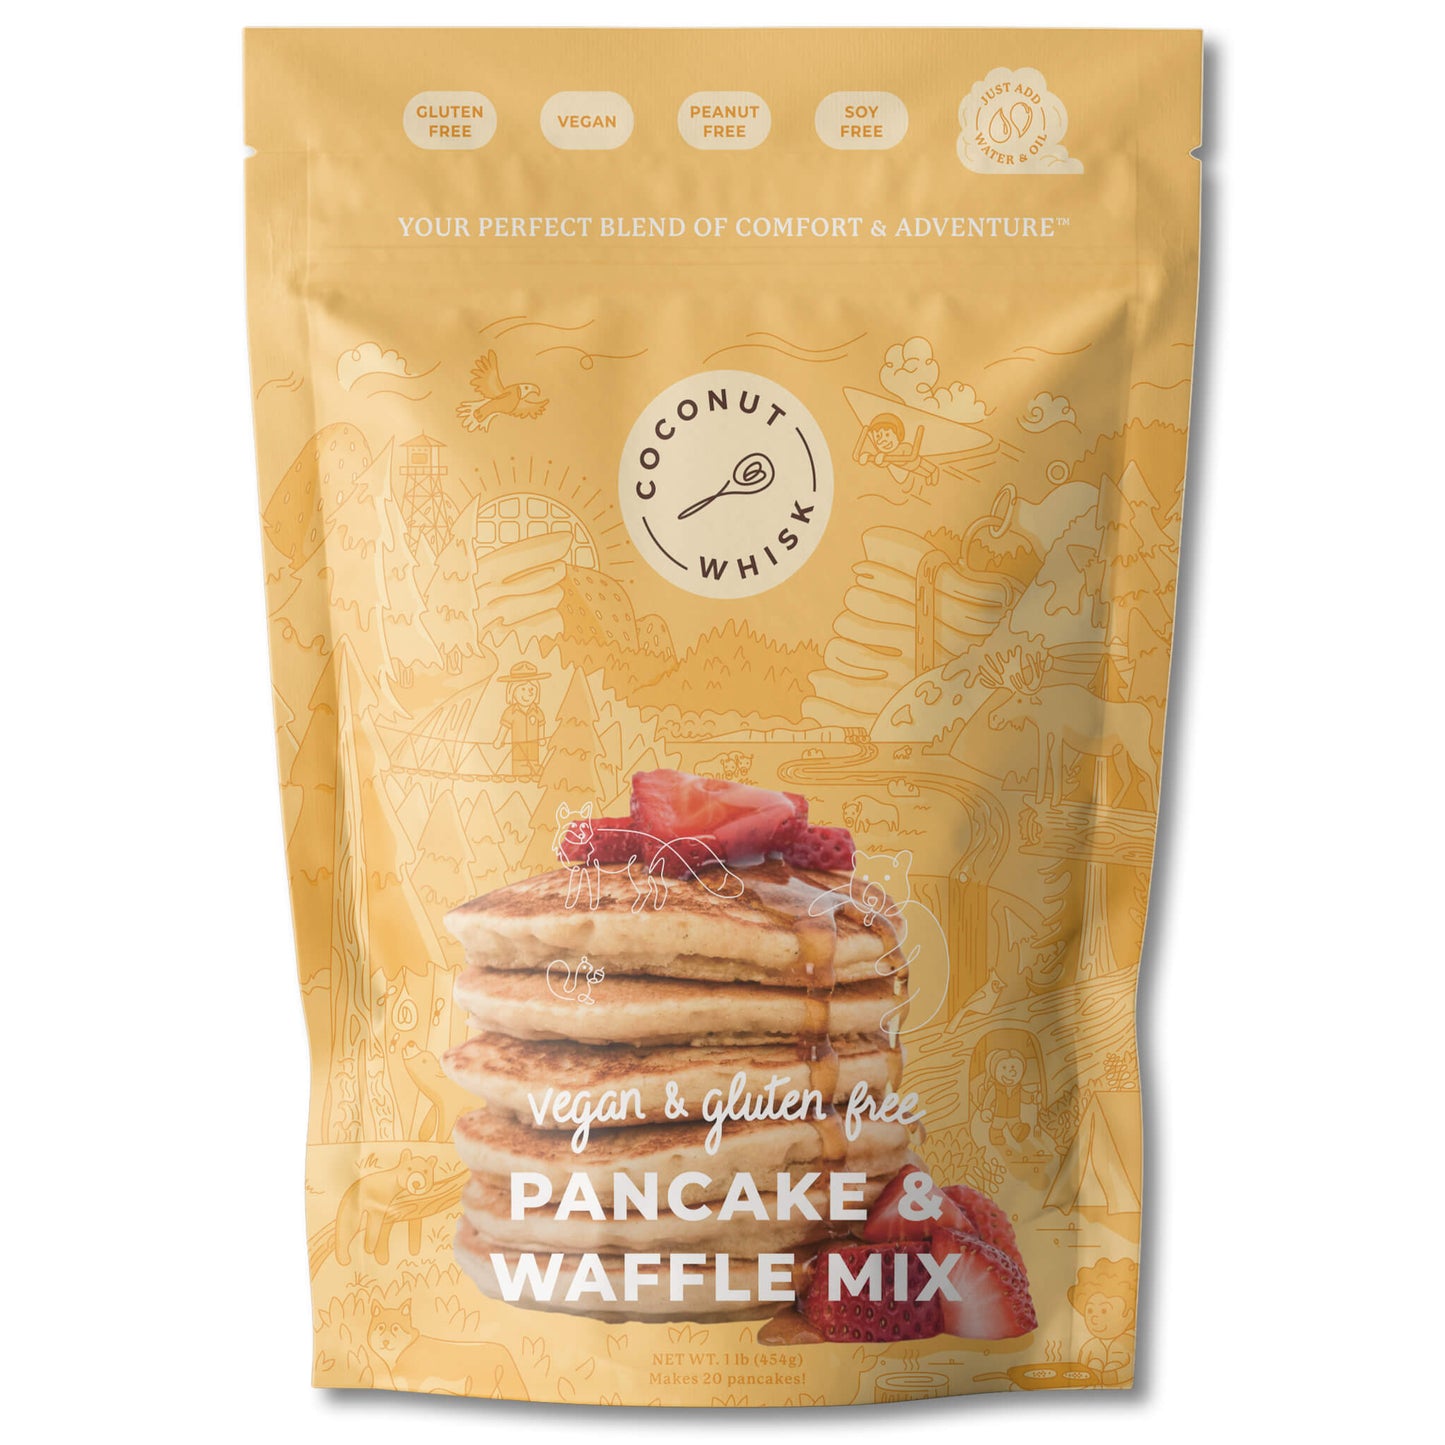 Original Pancake & Waffle Mix - Coconut Whisk Original Pancake & Waffle Mix Baking Mixes